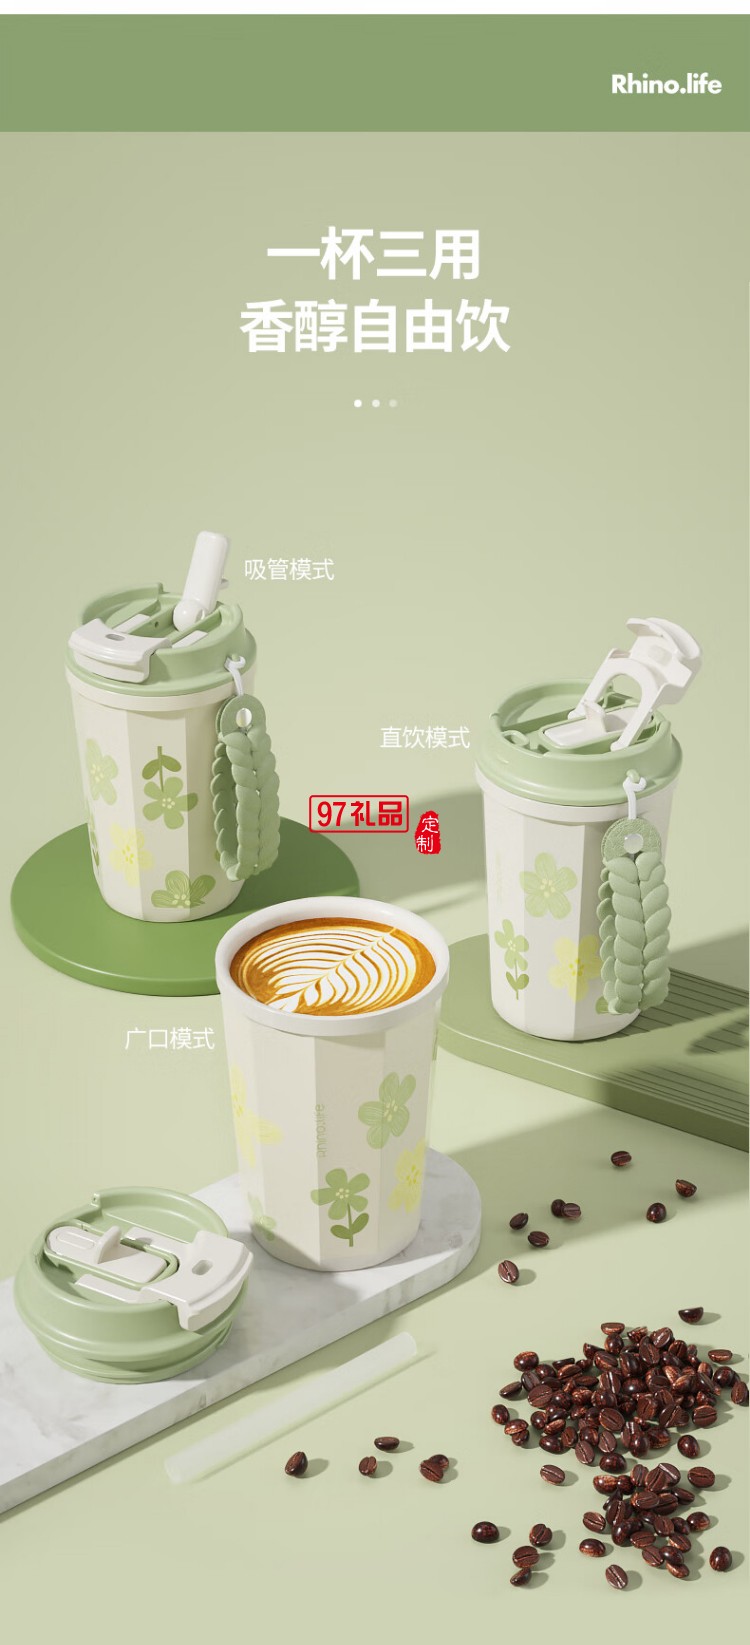 独角犀双饮口陶瓷内胆咖啡杯  春绿海棠